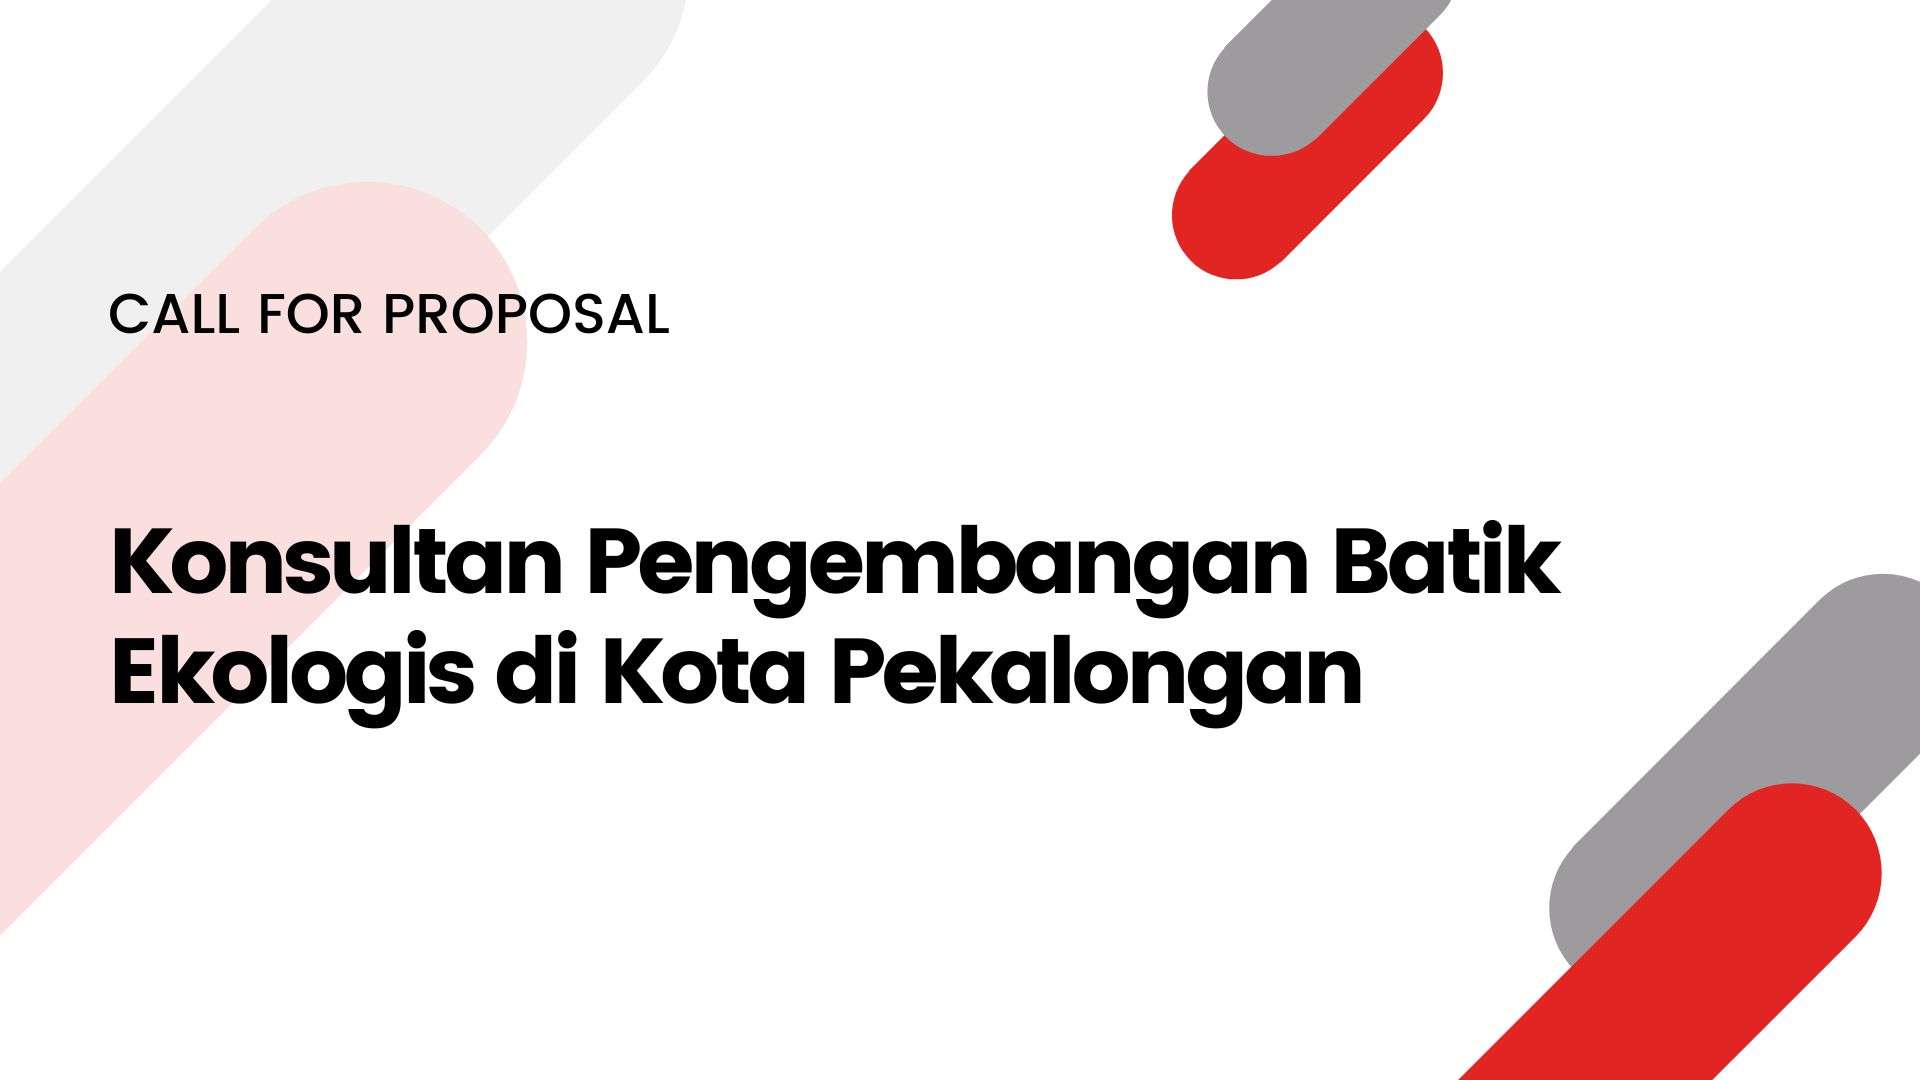 Call for Proposal: Konsultan Pengembangan Batik Ekologis di Kota Pekalongan